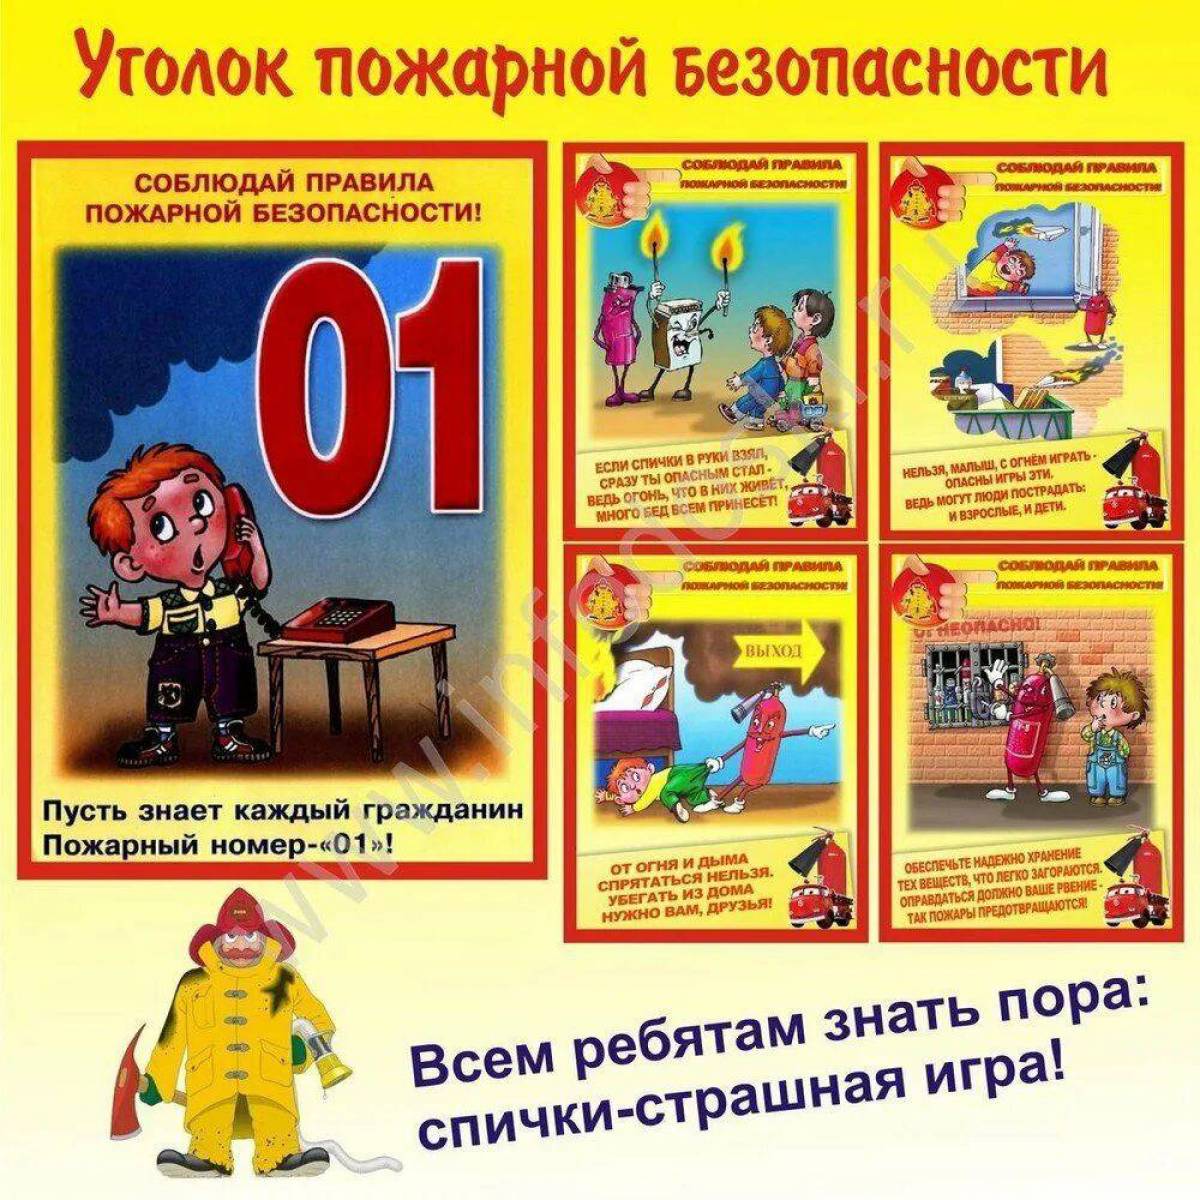 Правила пожарной безопасности #16